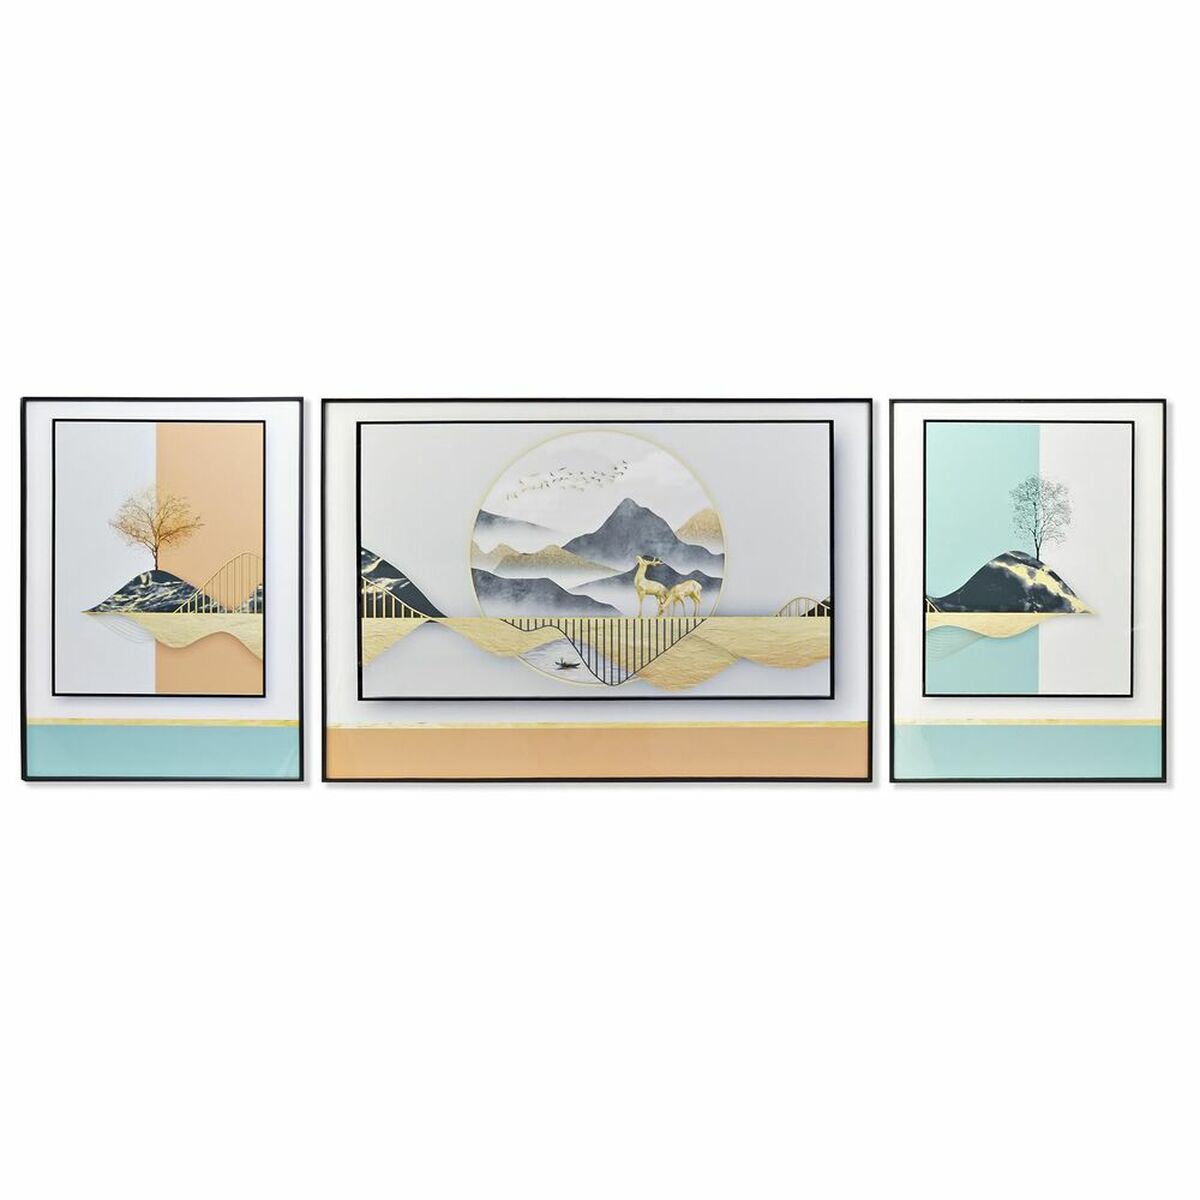 Jeu de 3 tableaux Contemporains Design Montagne et Animaux Home Decor (200 x 3 x 70 cm) (3 pcs)